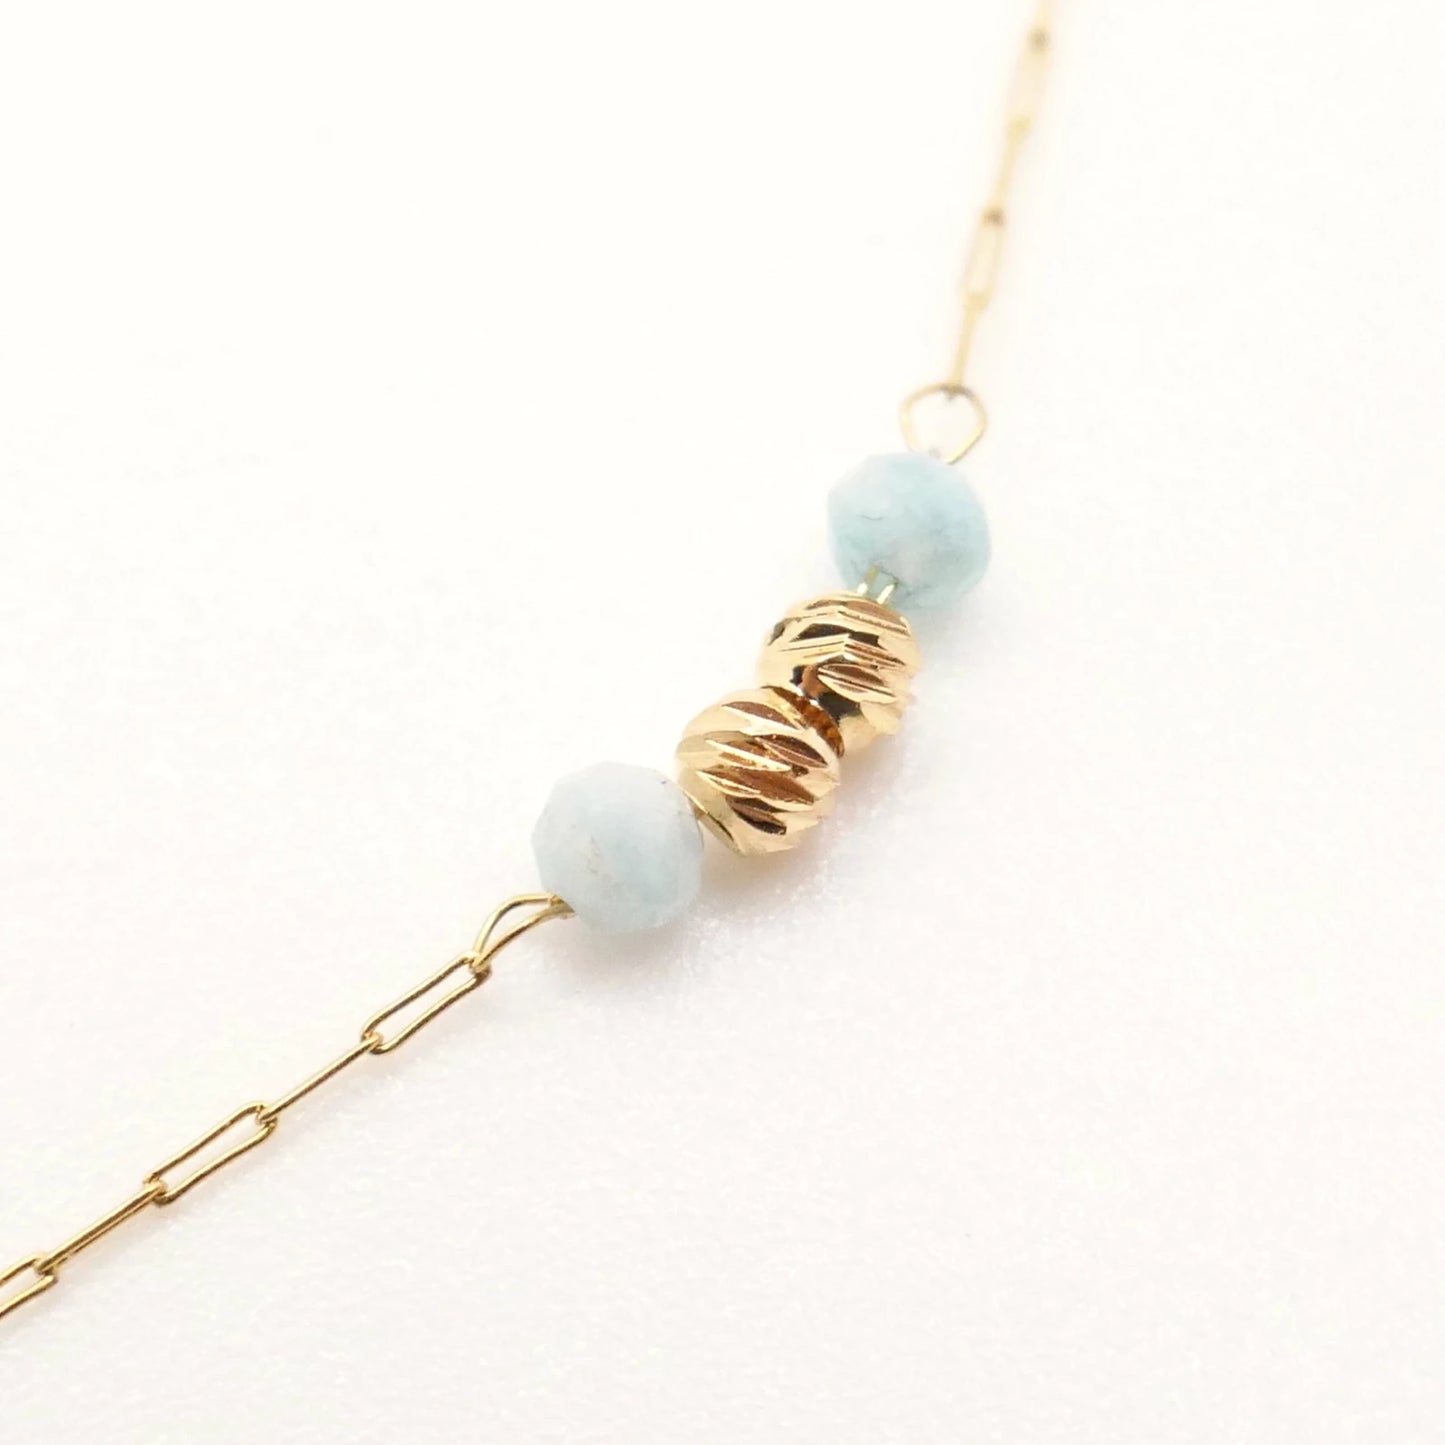 collier pour femme maillons dorés longue chaine et perles rondes martelées or et bleues